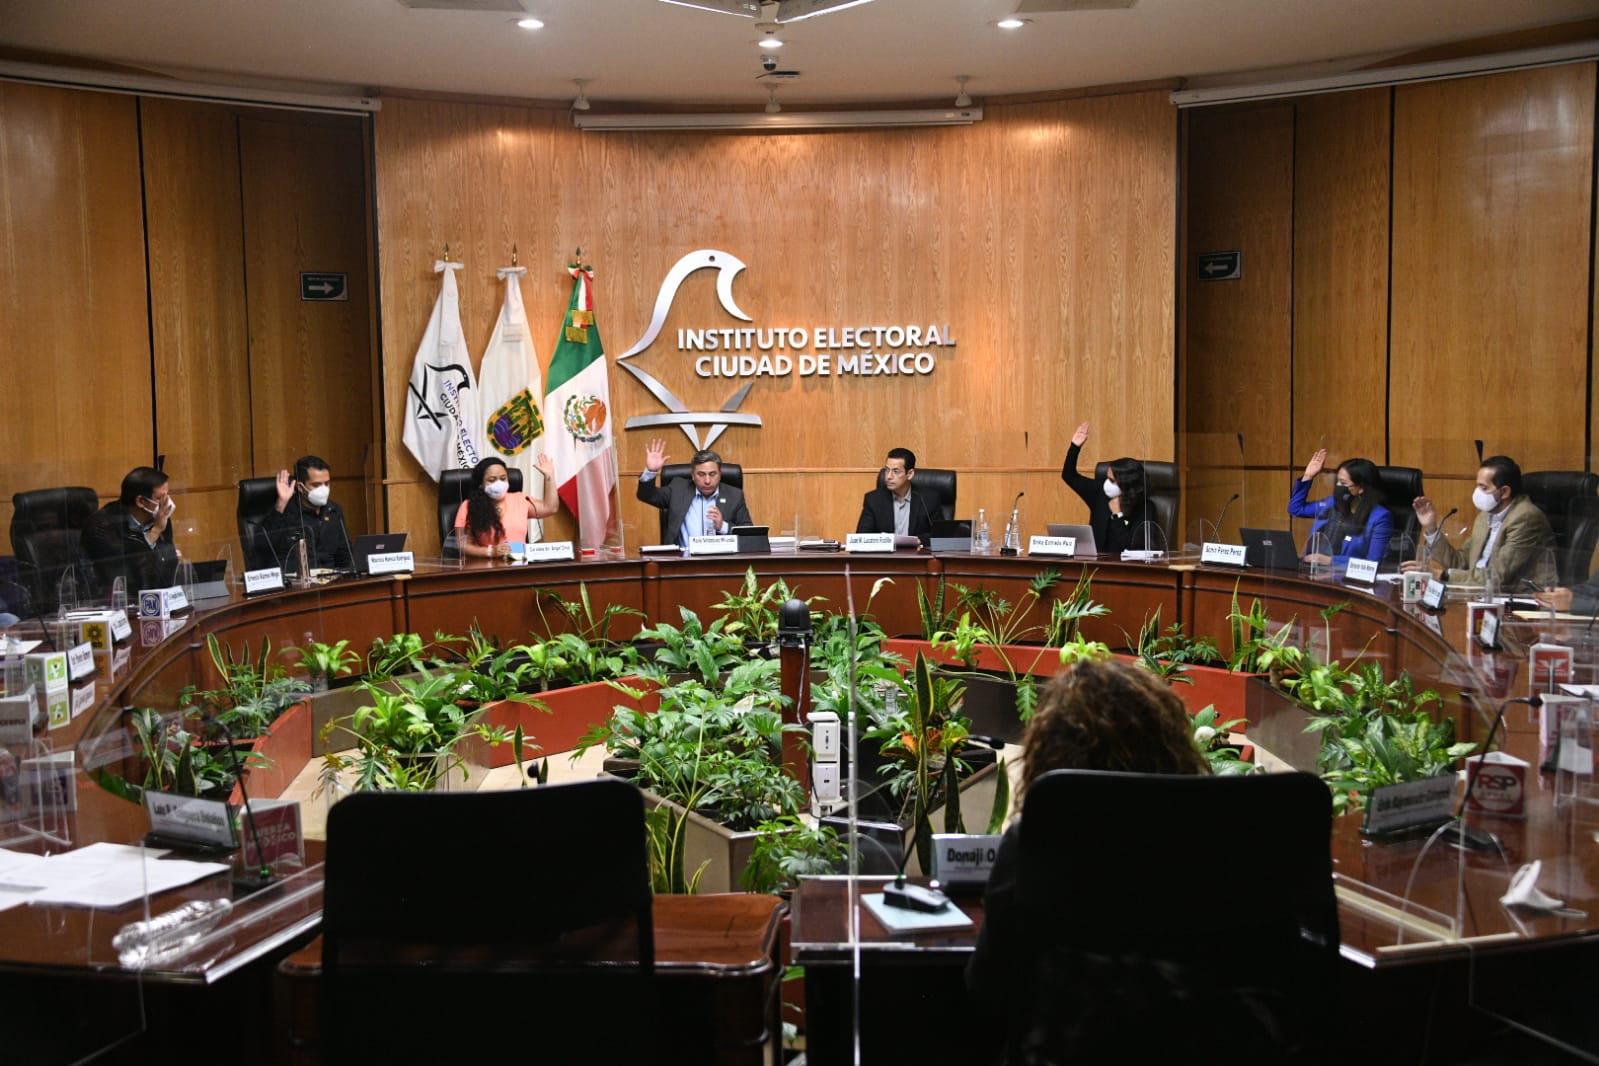 Asigna IECM Diputaciones locales electas por el principio de Representación Proporcional